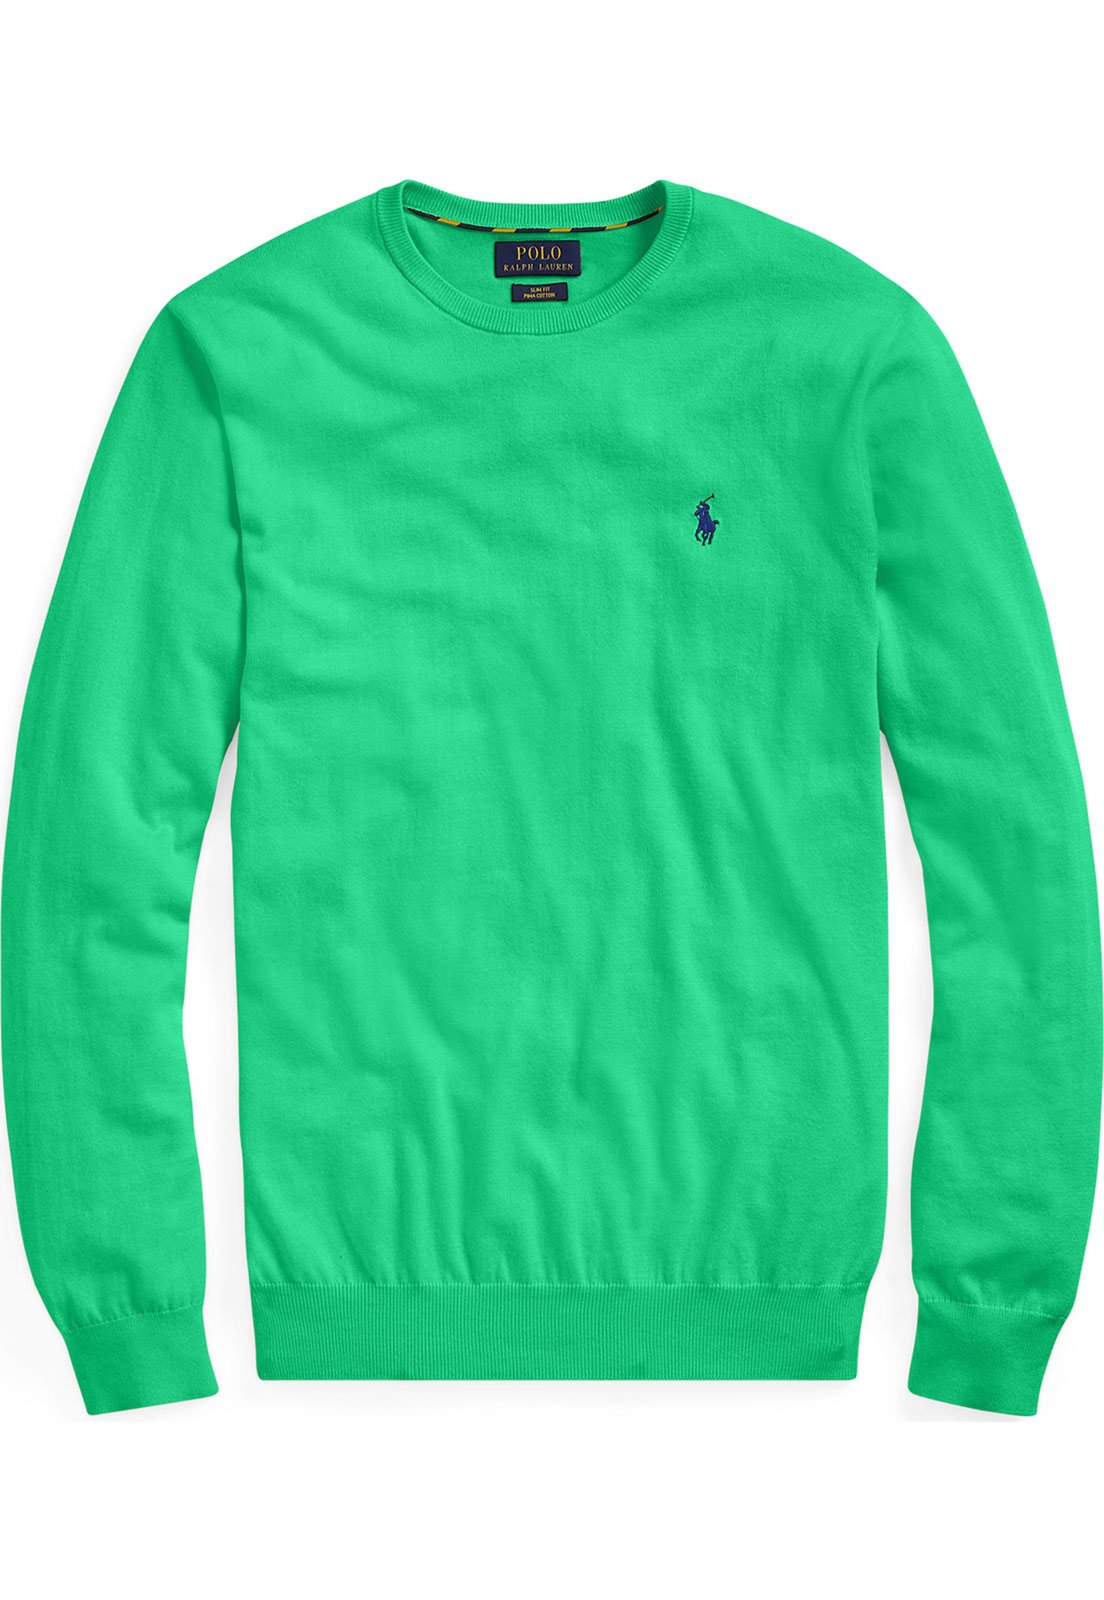 Suéter Polo Ralph Lauren Tricot Slim Fit Pima Verde - Compre Agora